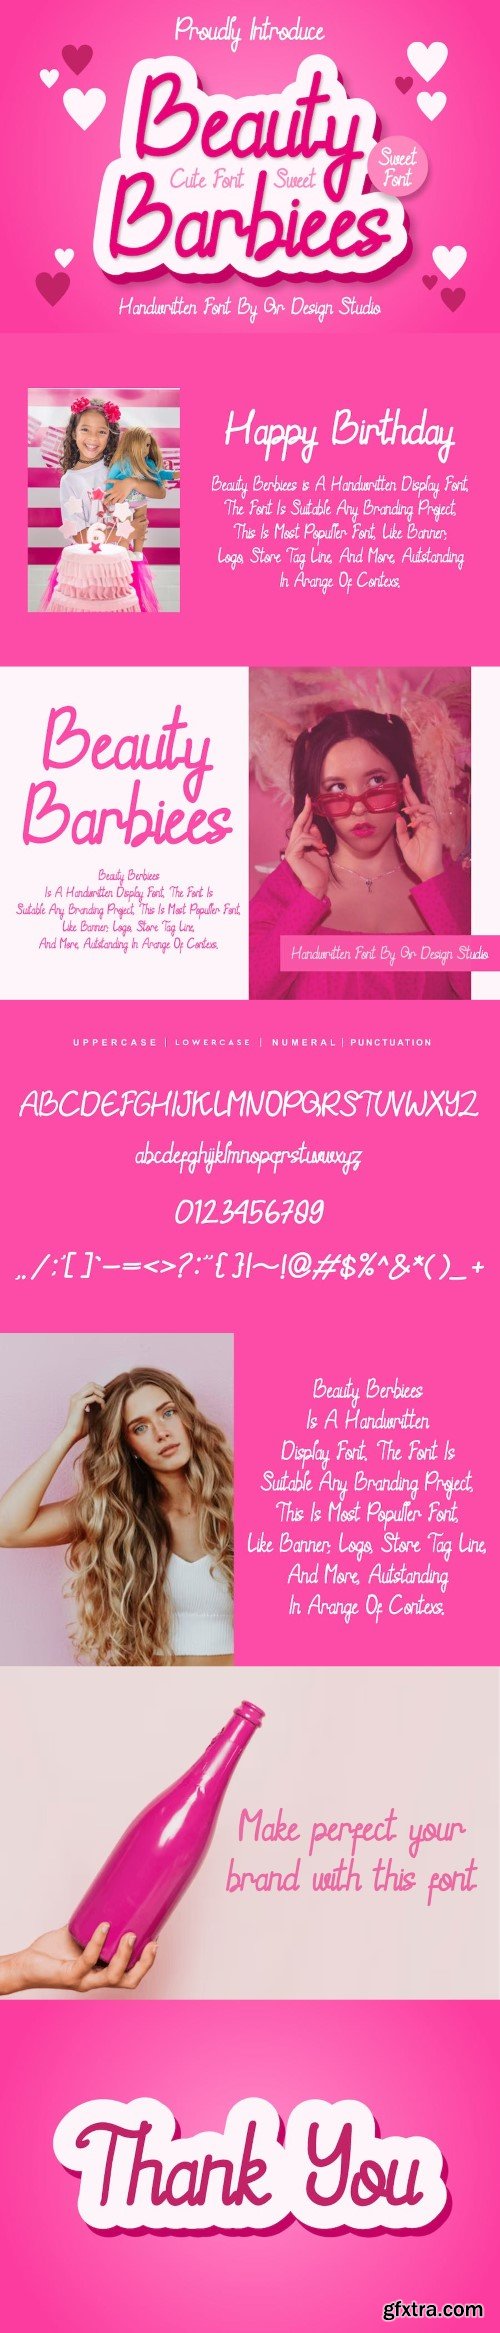 Beauty Barbiees - Handwritten font